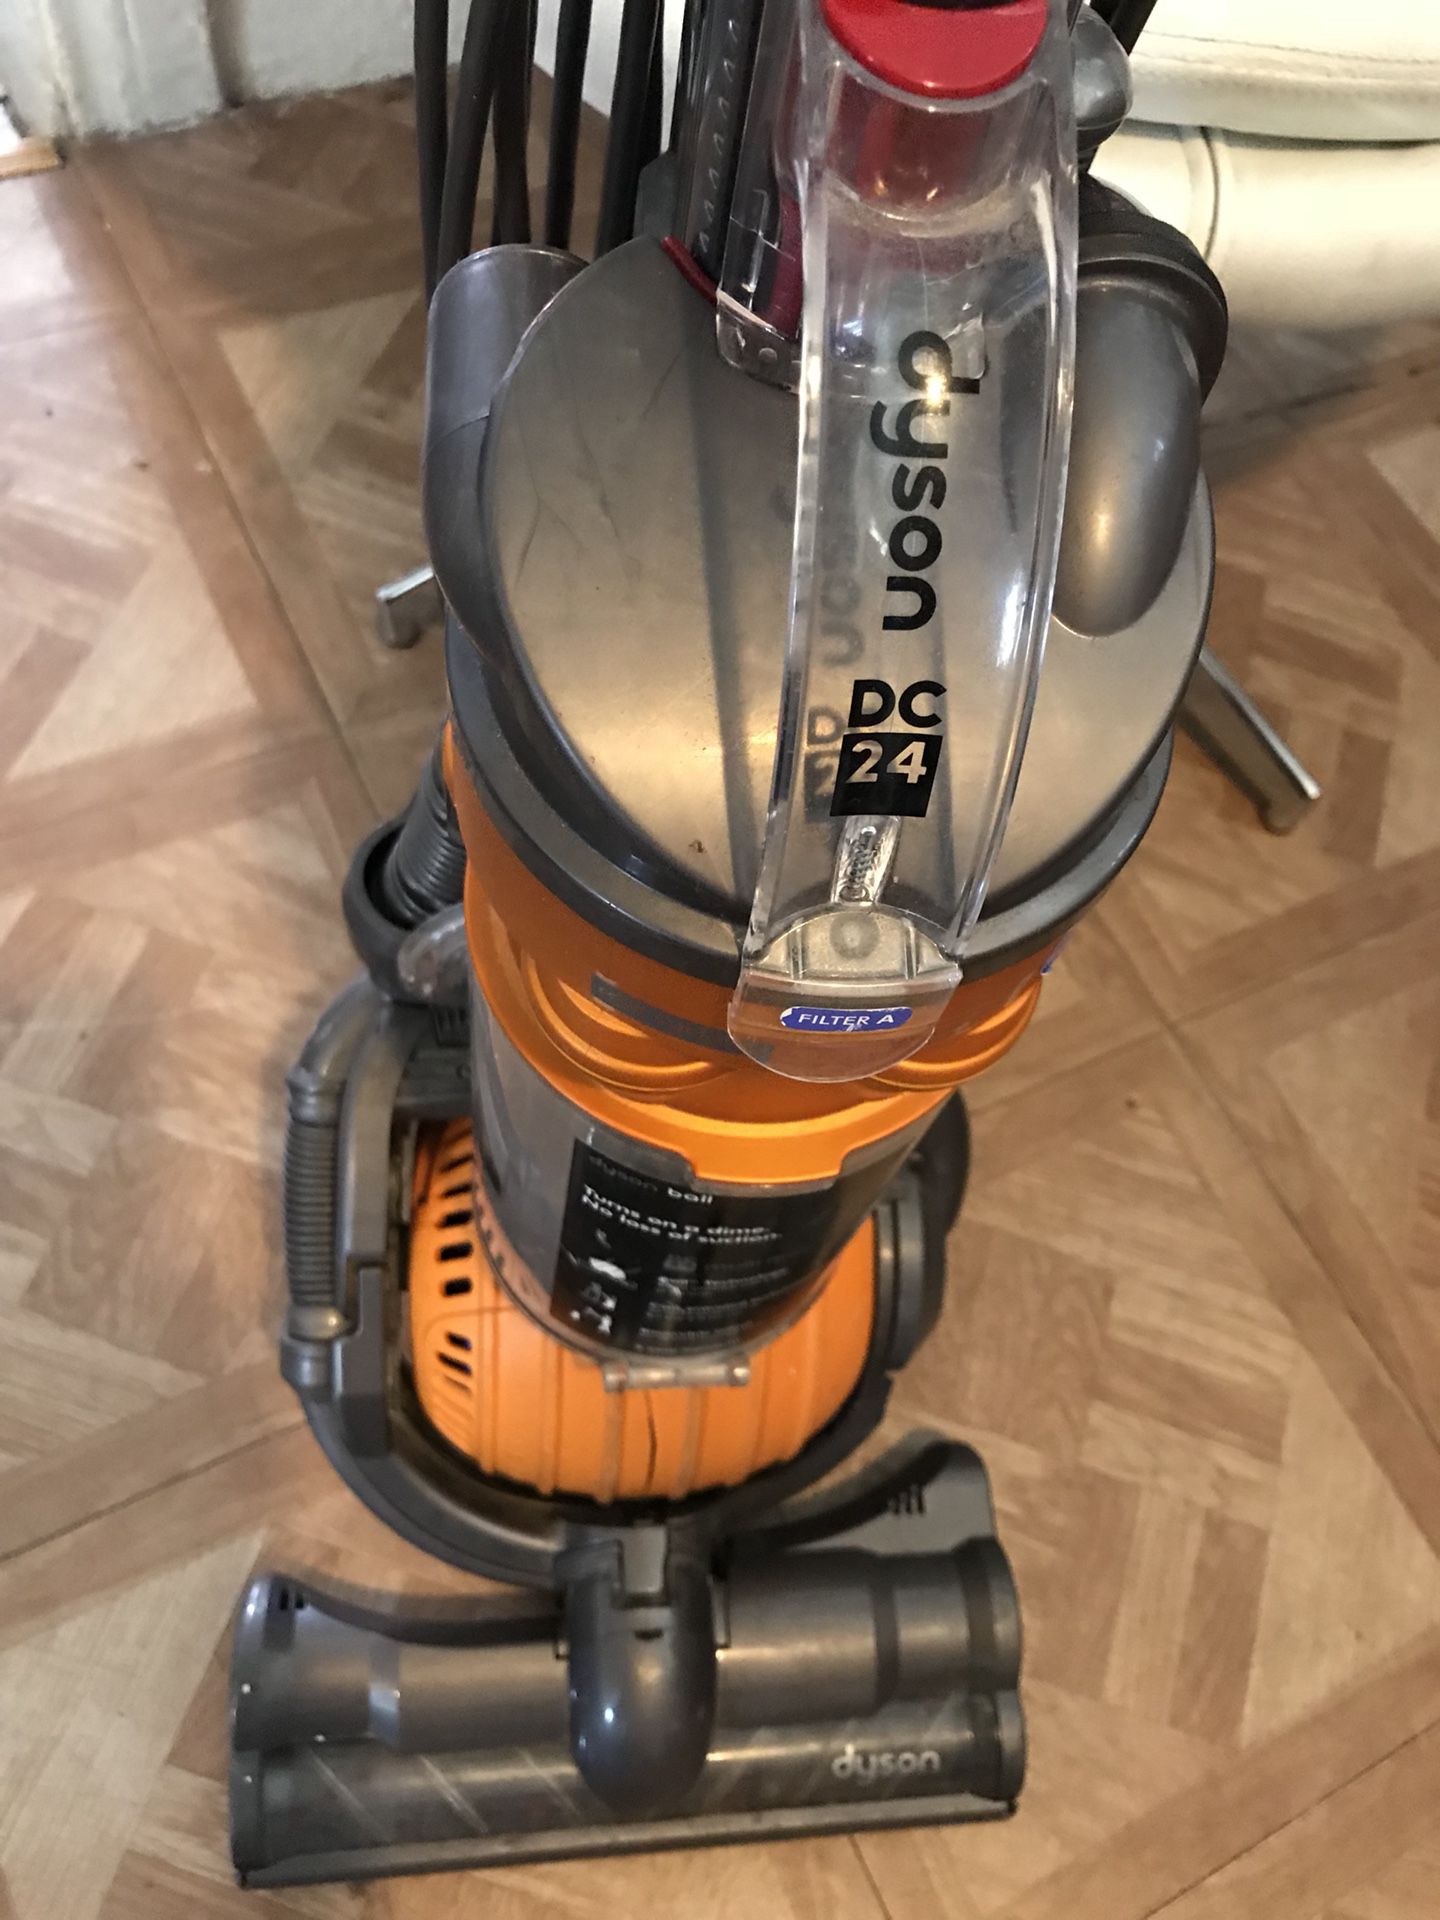 Dyson DC24 Multi Floor vacuum